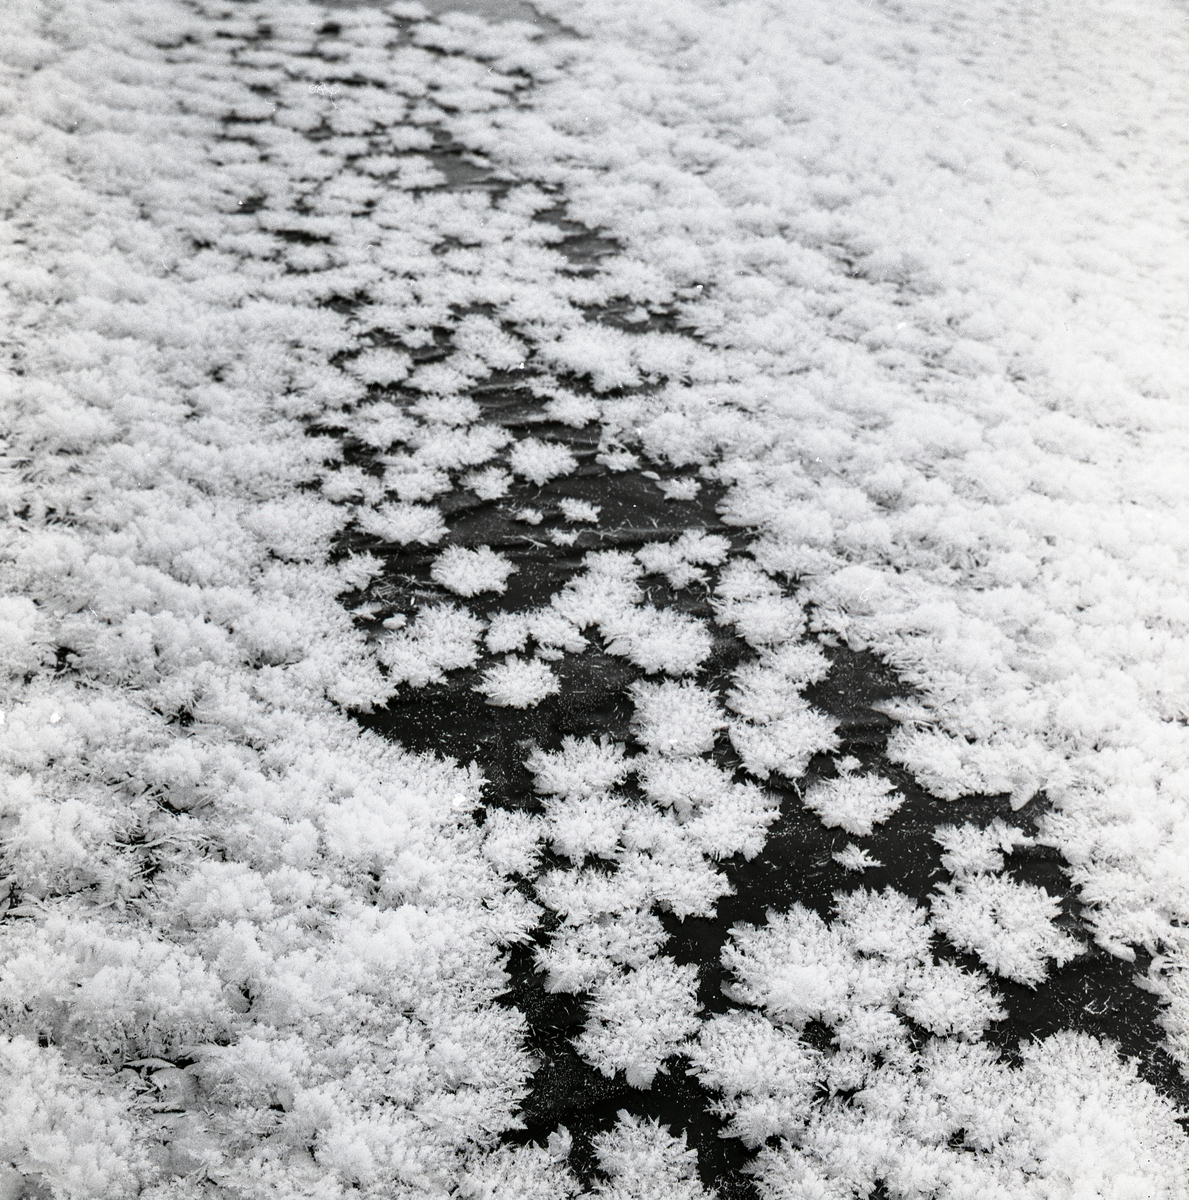 Närbild på stjärnformade iskristaller vid Hyttkvarnån, 3-21 januari 1960.